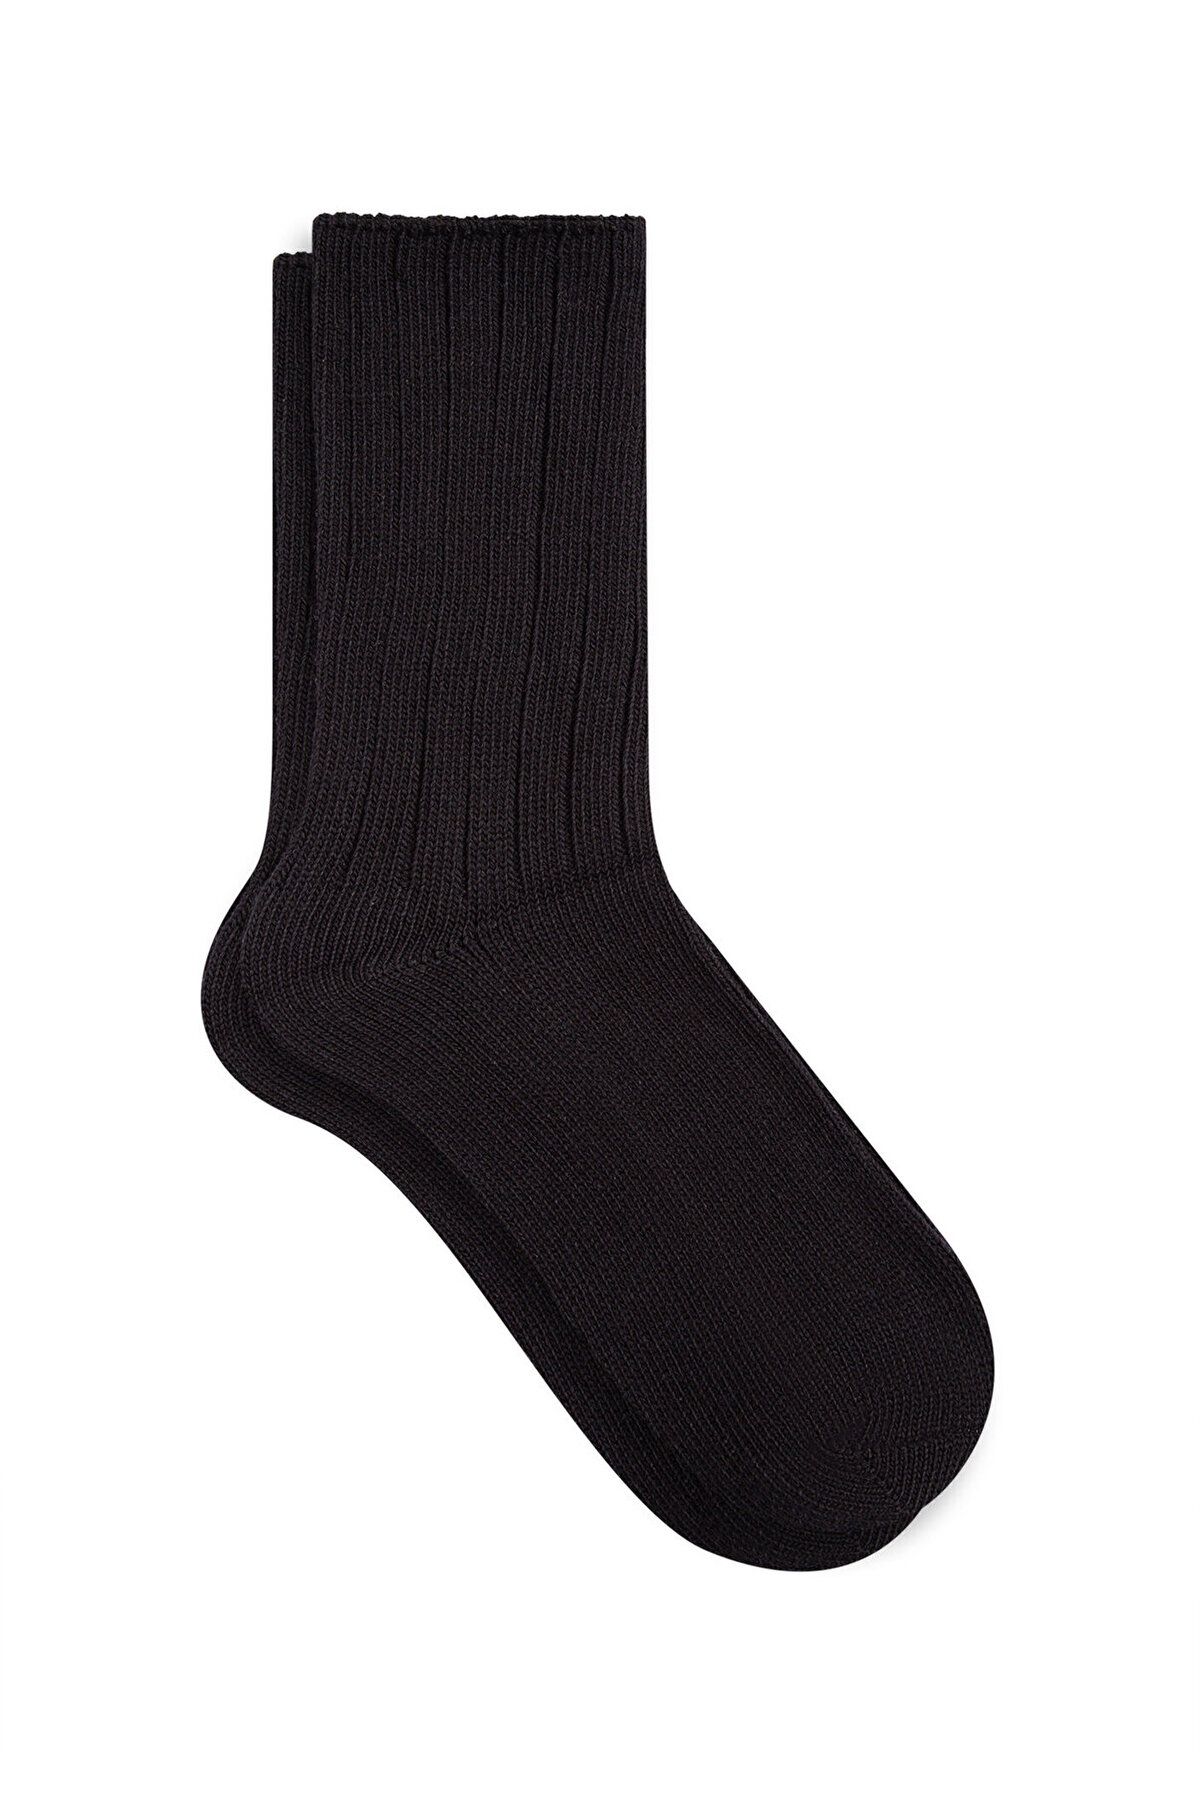 Mavi Siyah Bot Çorabı 198666-900